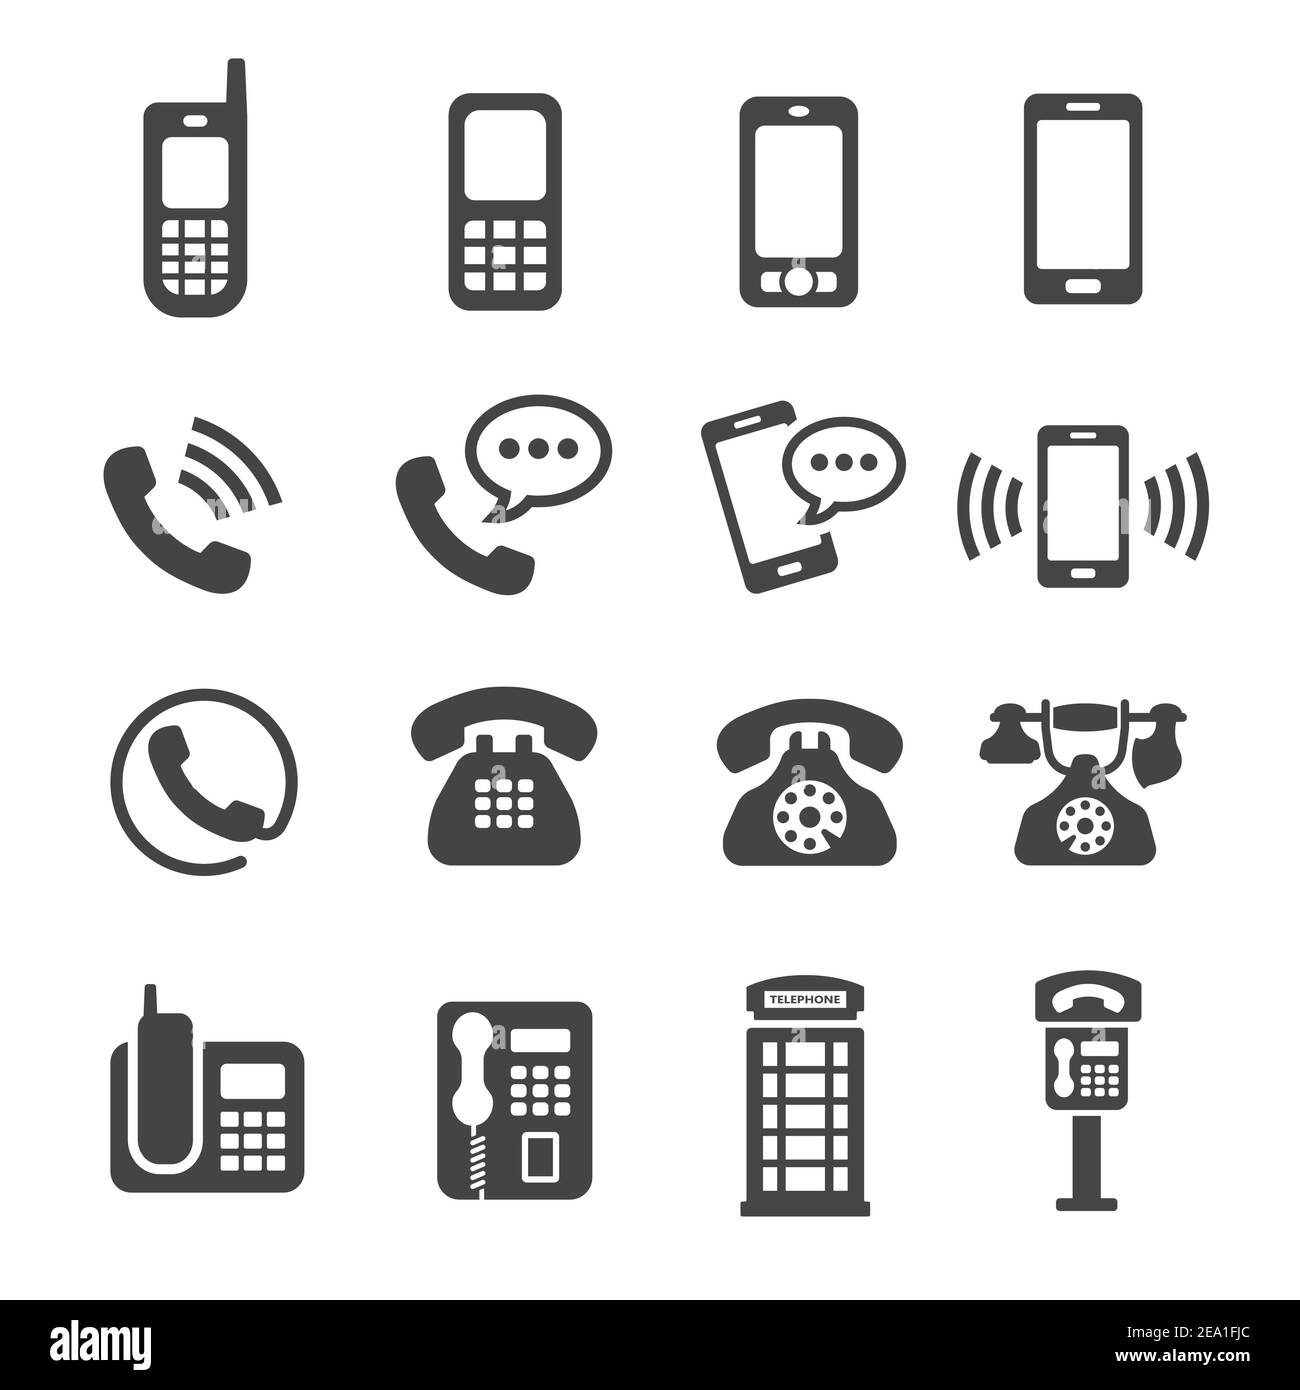 phone,telephone icon Stock Vector